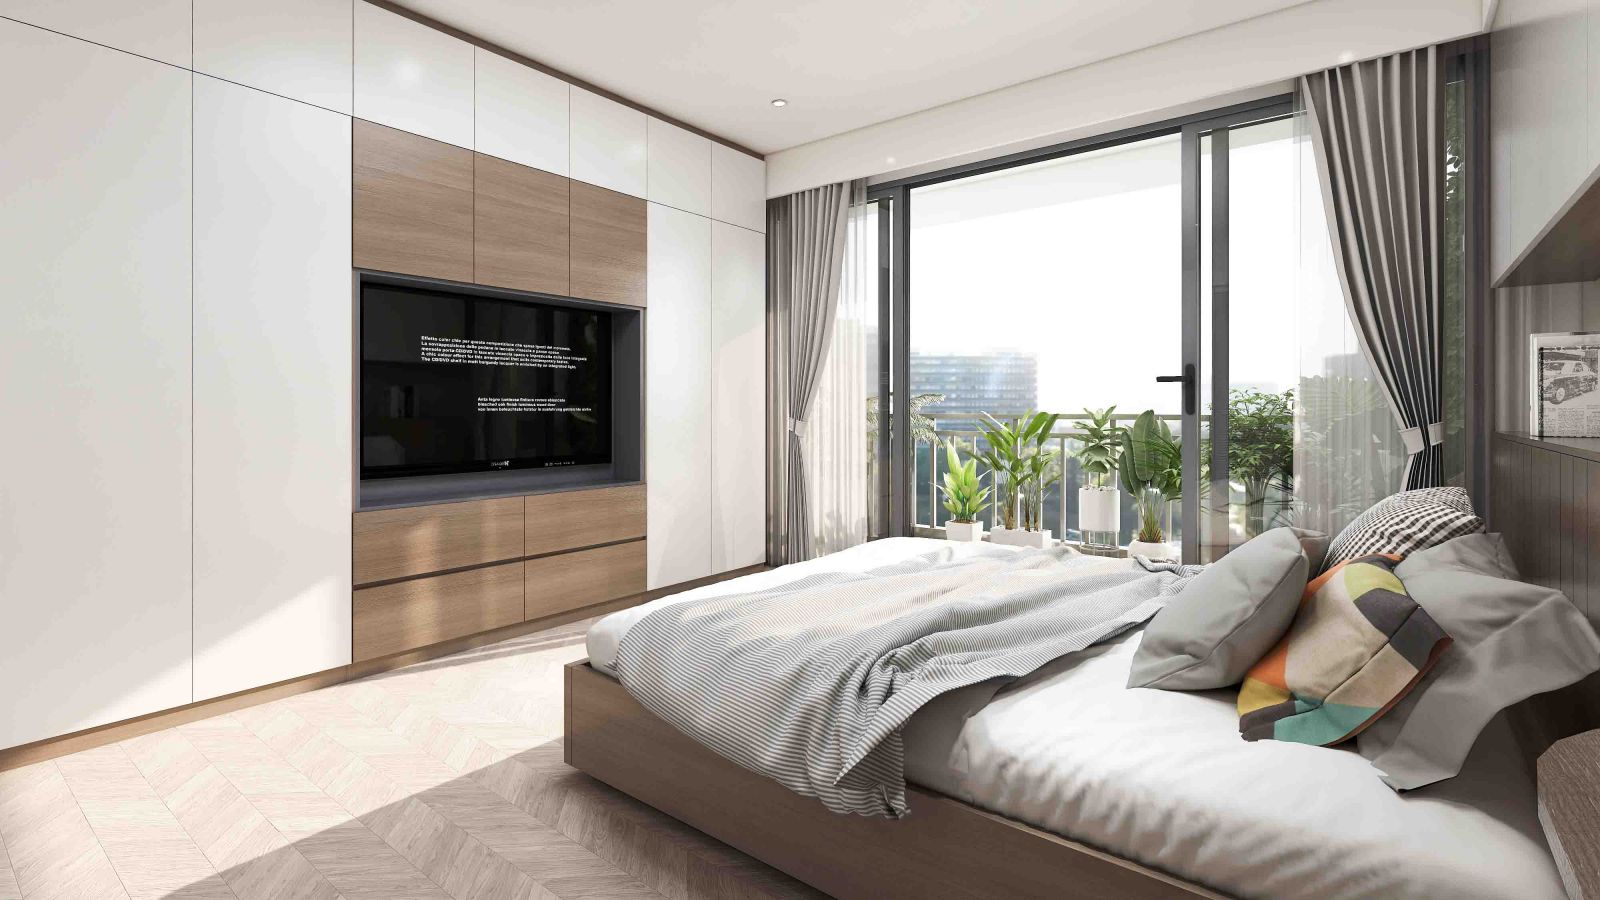  14 Mẫu thiết kế phòng ngủ hiện đại - tại Nhà Hoàng Anh - TP Ninh Bình